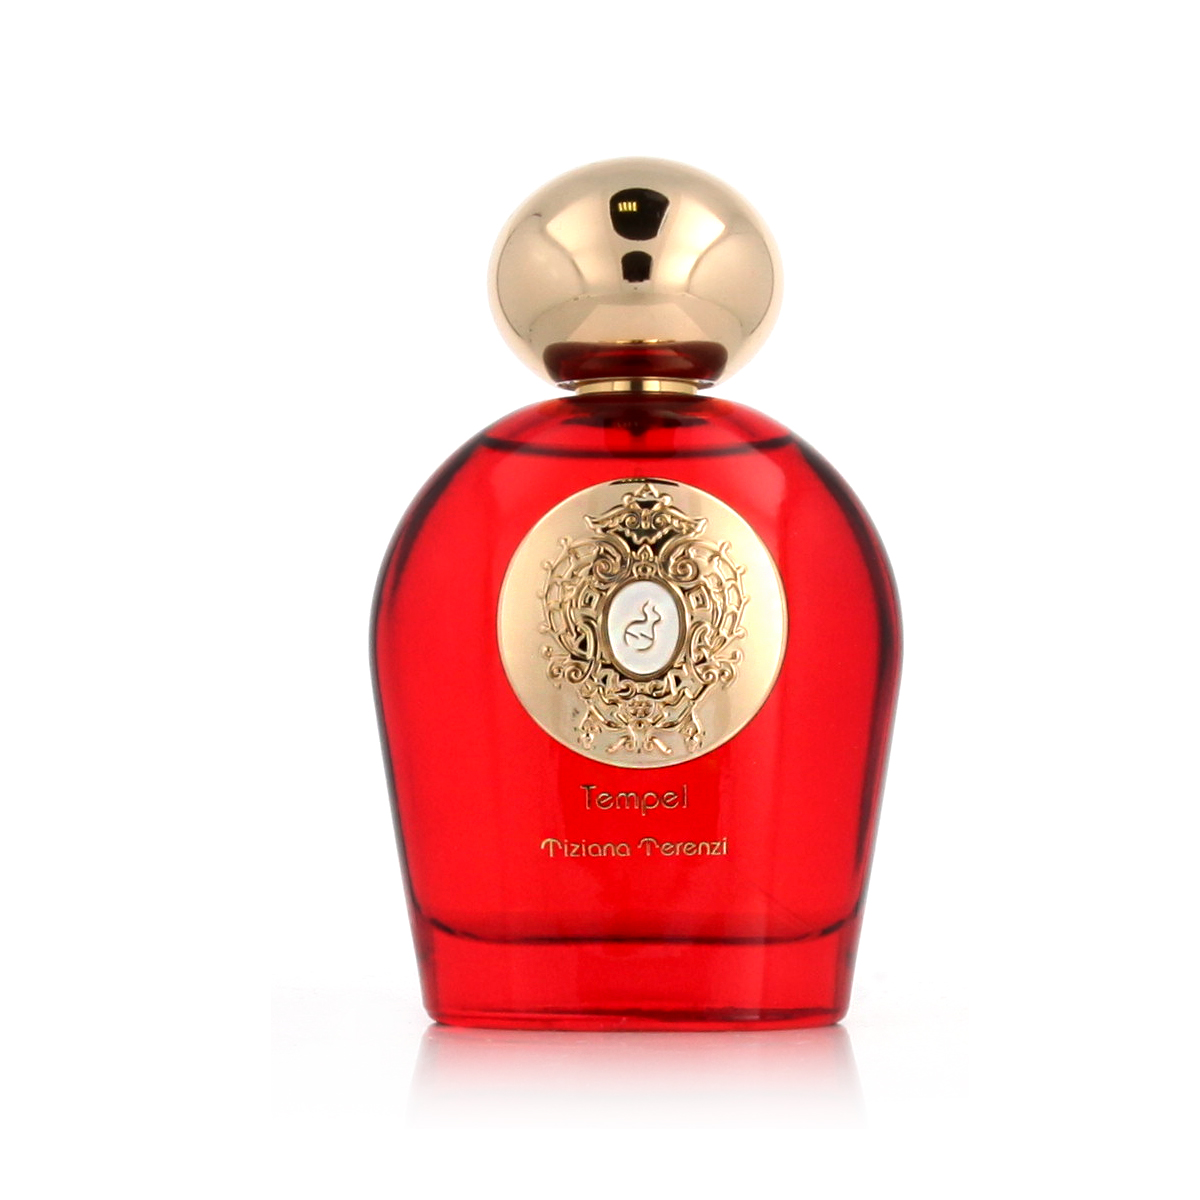 Tiziana Terenzi Tempel 10 ml NIŠINIAI kvepalų mėginukas (atomaizeris) Unisex Parfum